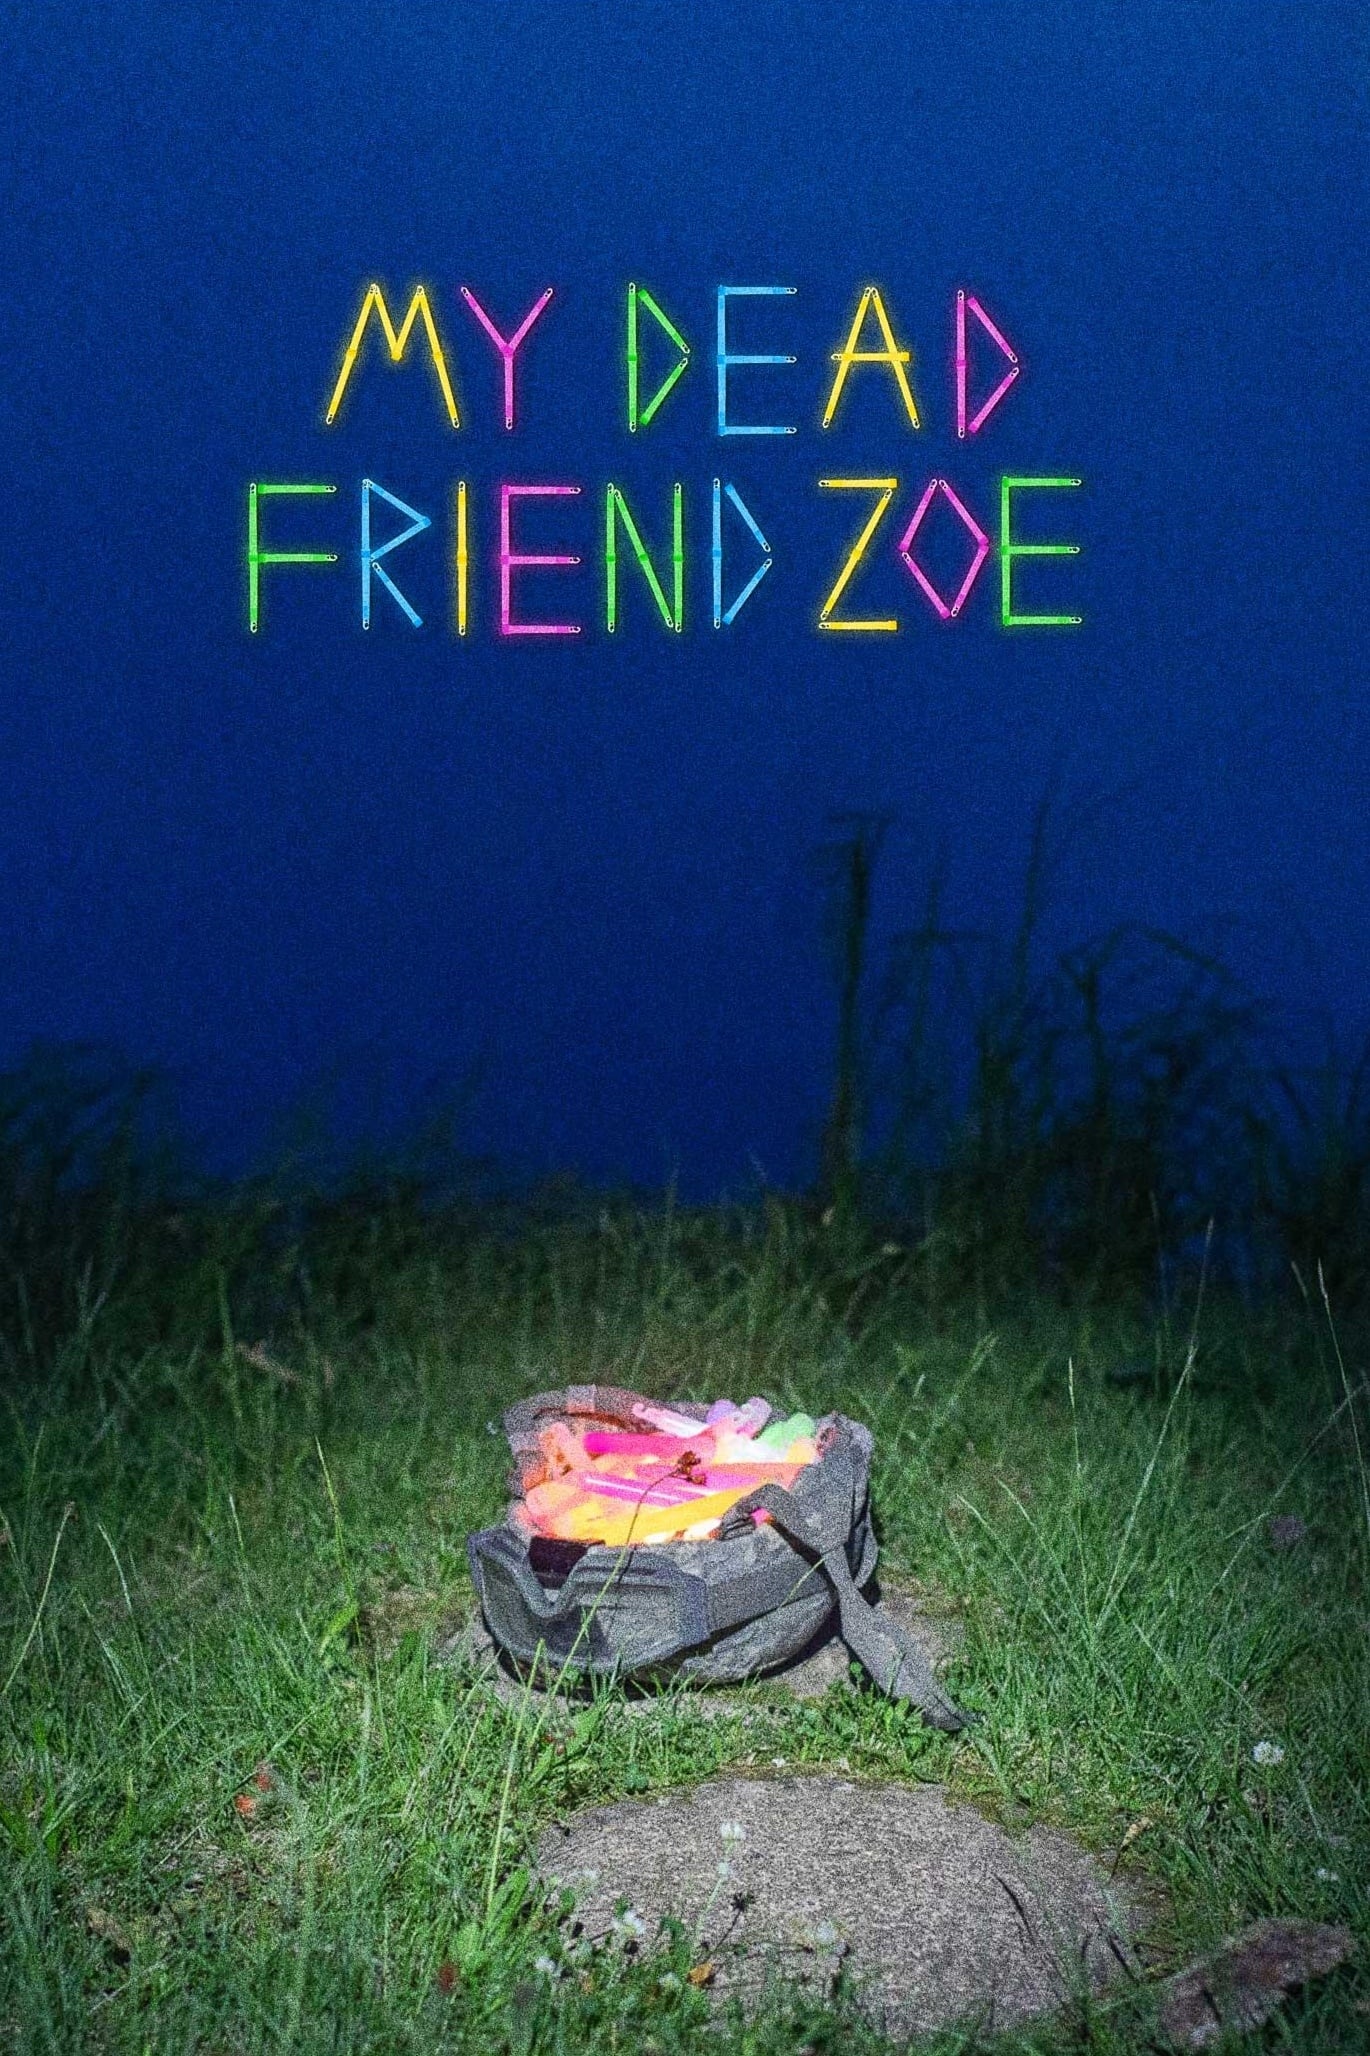 My Dead Friend Zoe